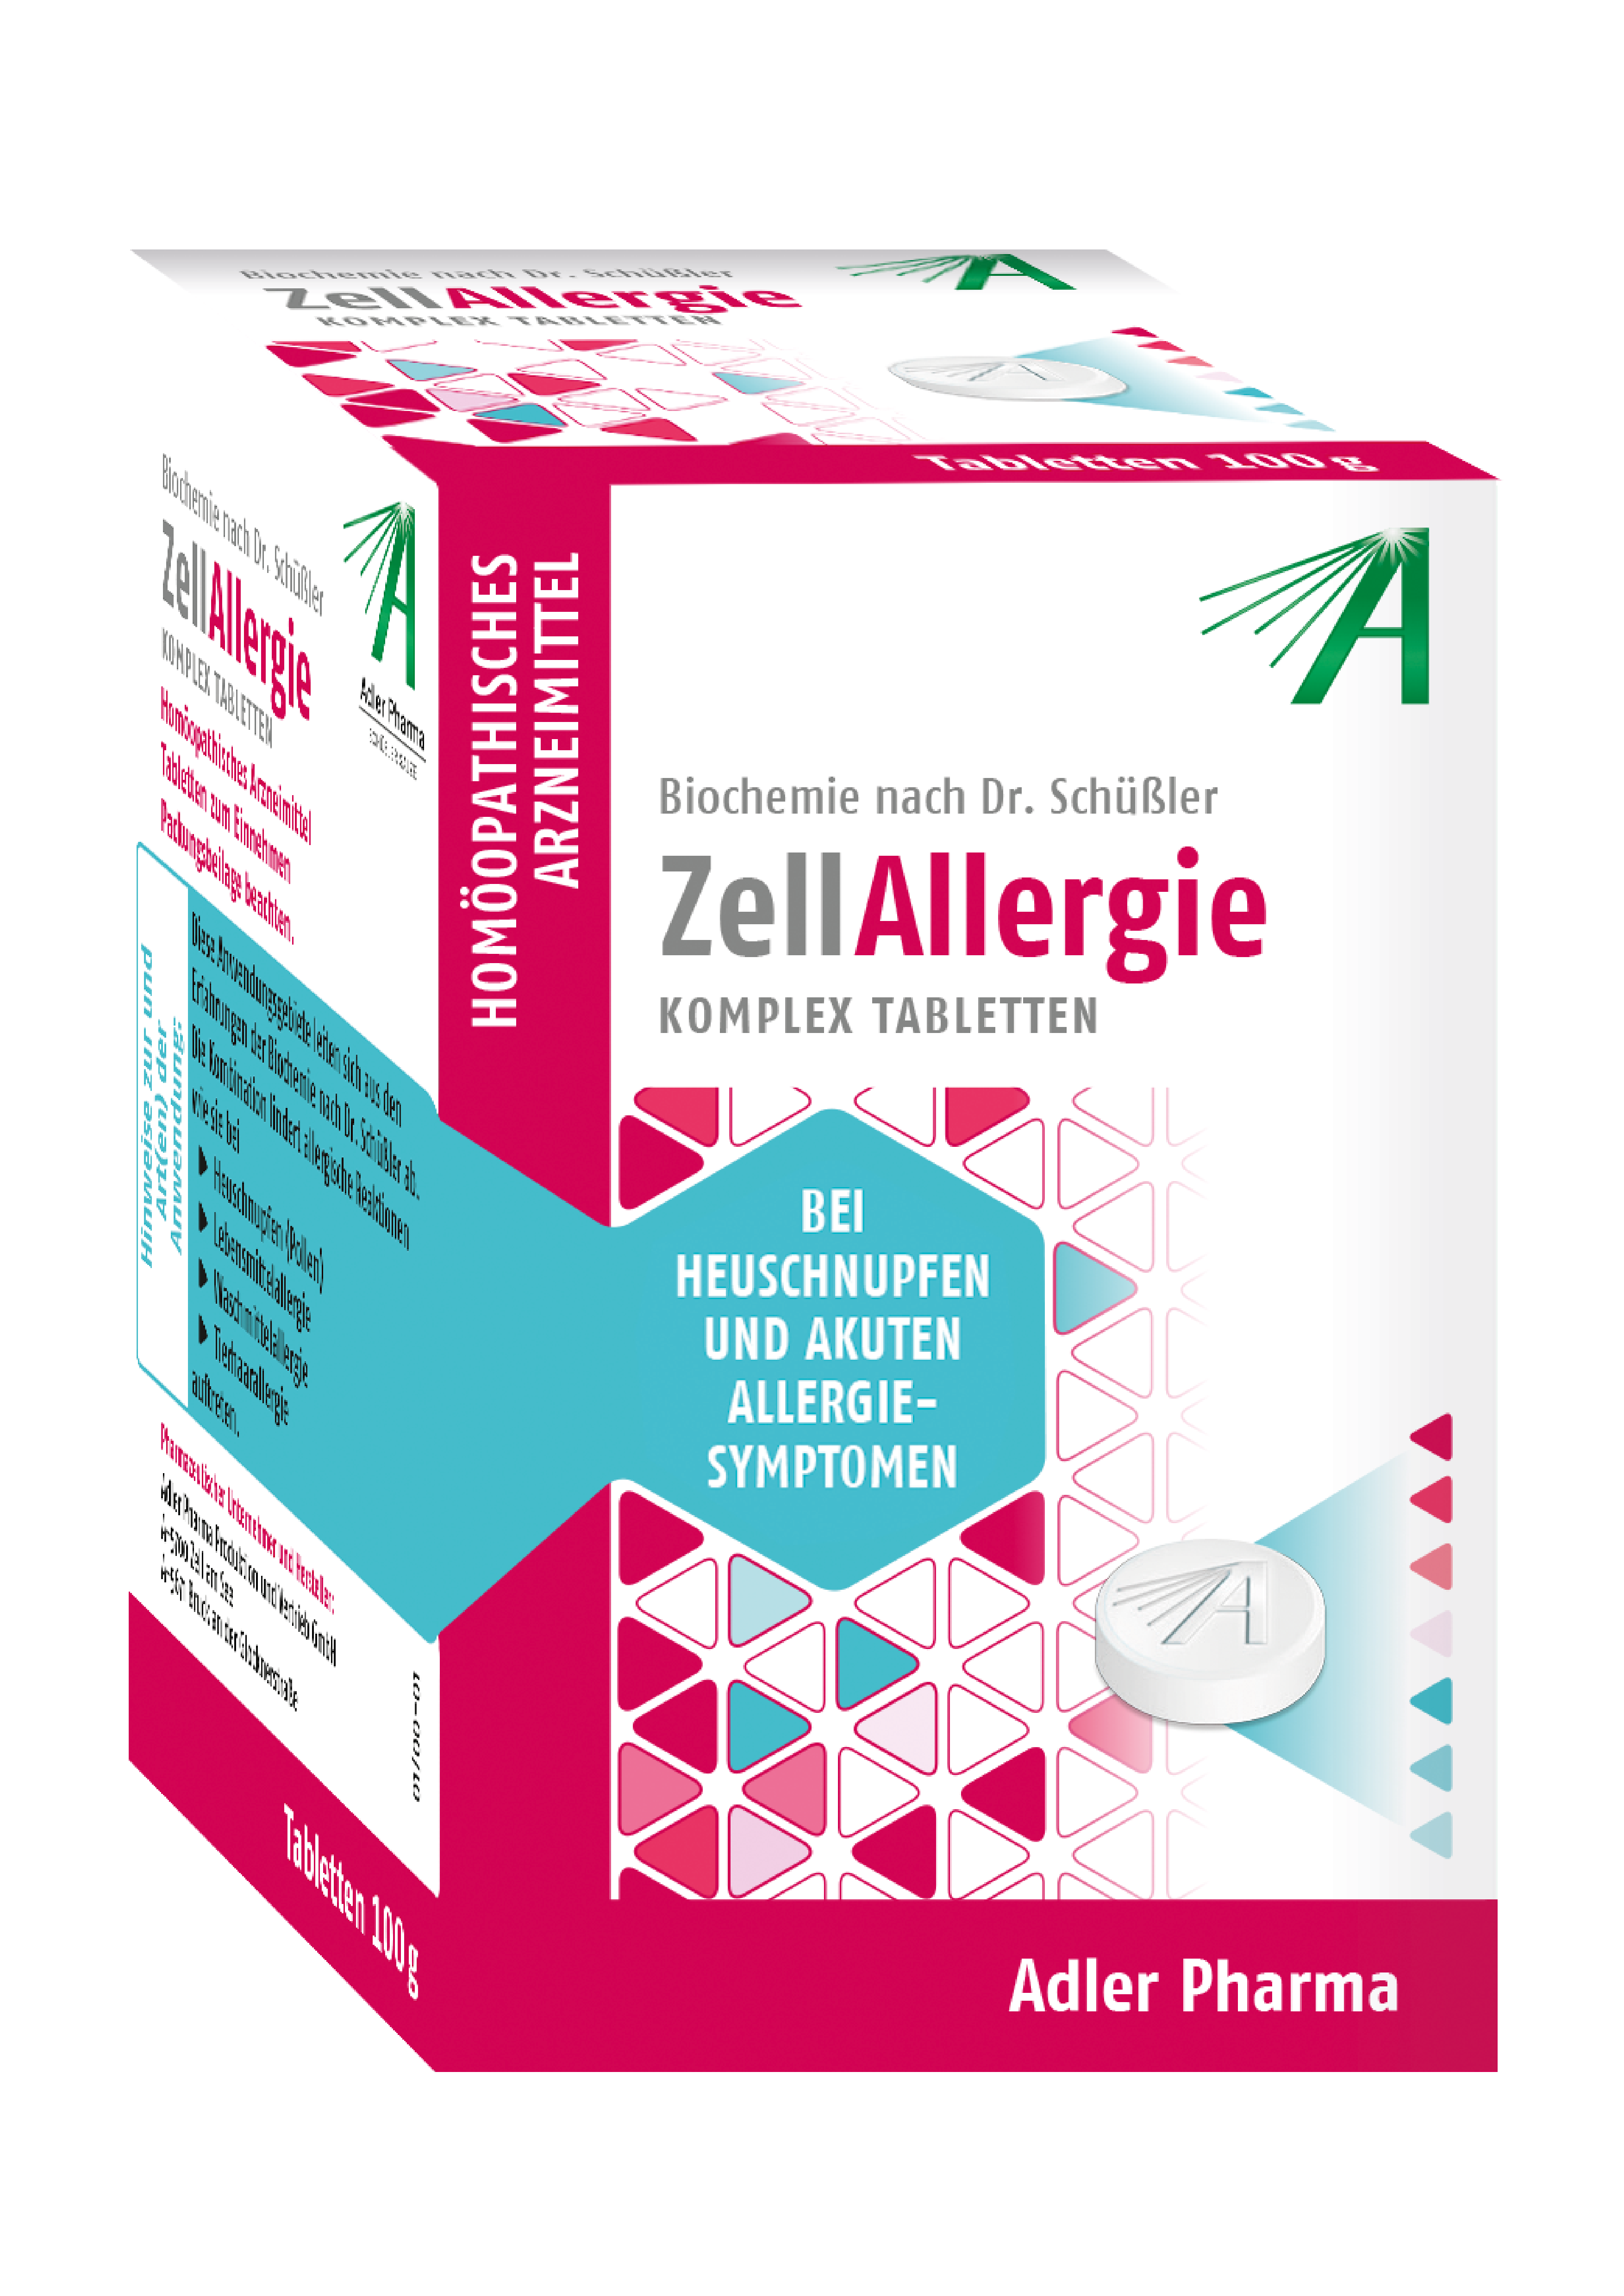 Biochemie nach Dr. Schüssler Zell Allergie Komplex - Tabletten